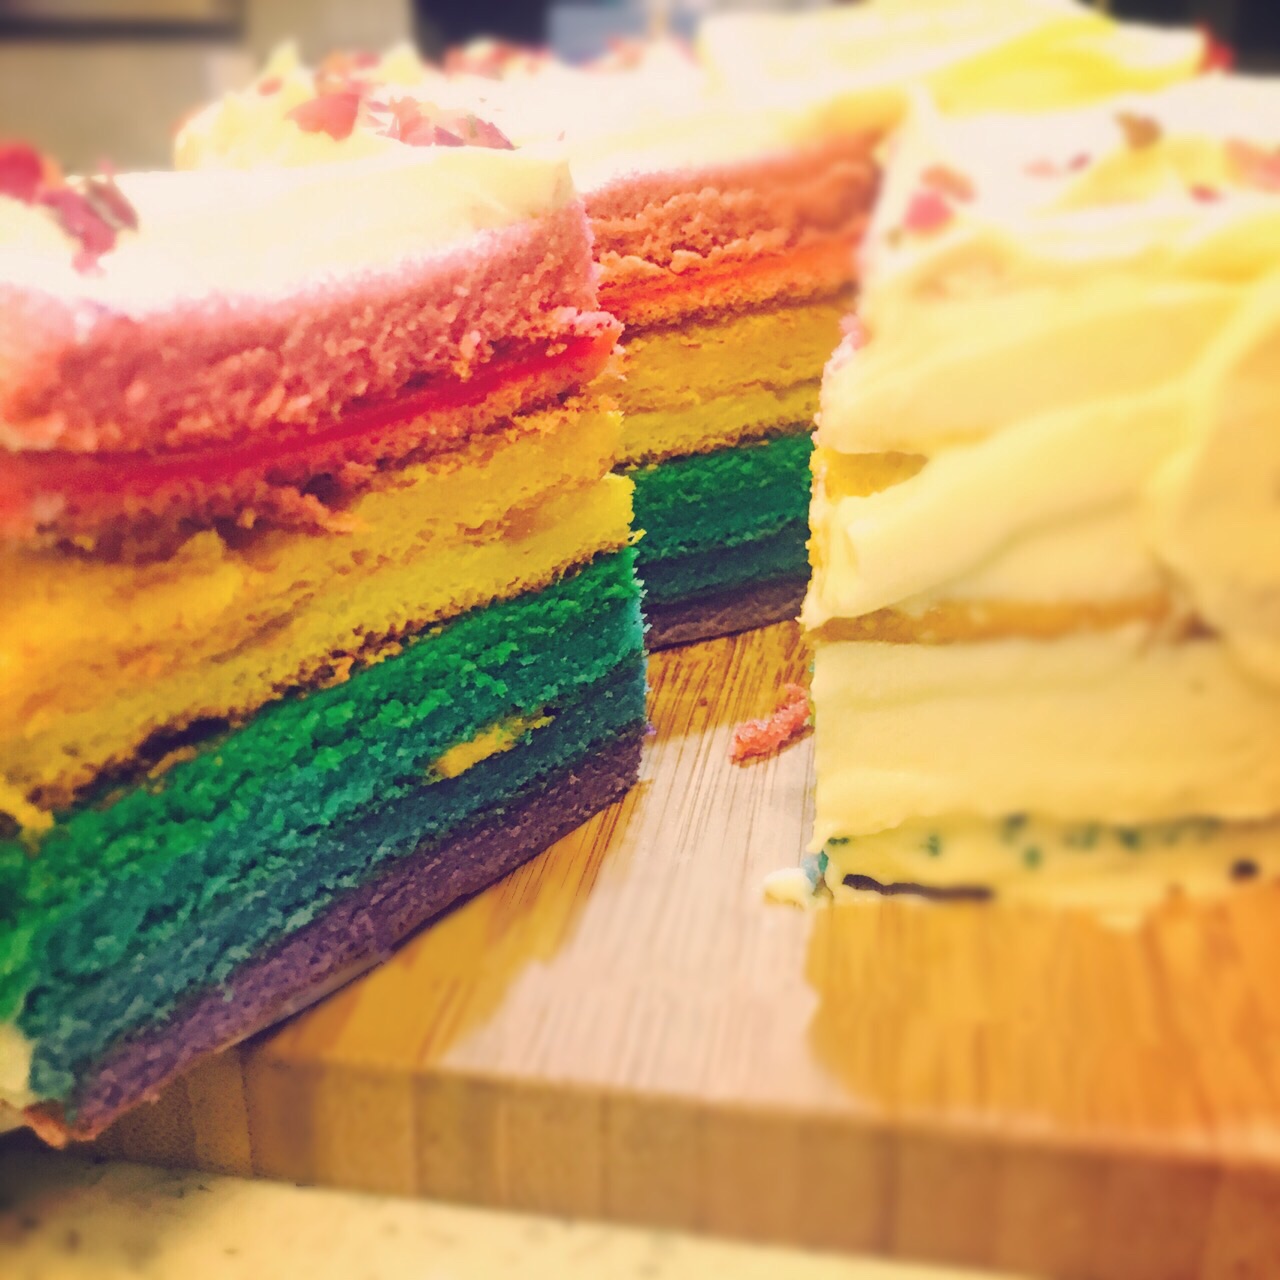 彩虹蛋糕的做法_【图解】彩虹蛋糕怎么做如何做好吃_彩虹蛋糕家常做法大全_米小米的厨娘_豆果美食